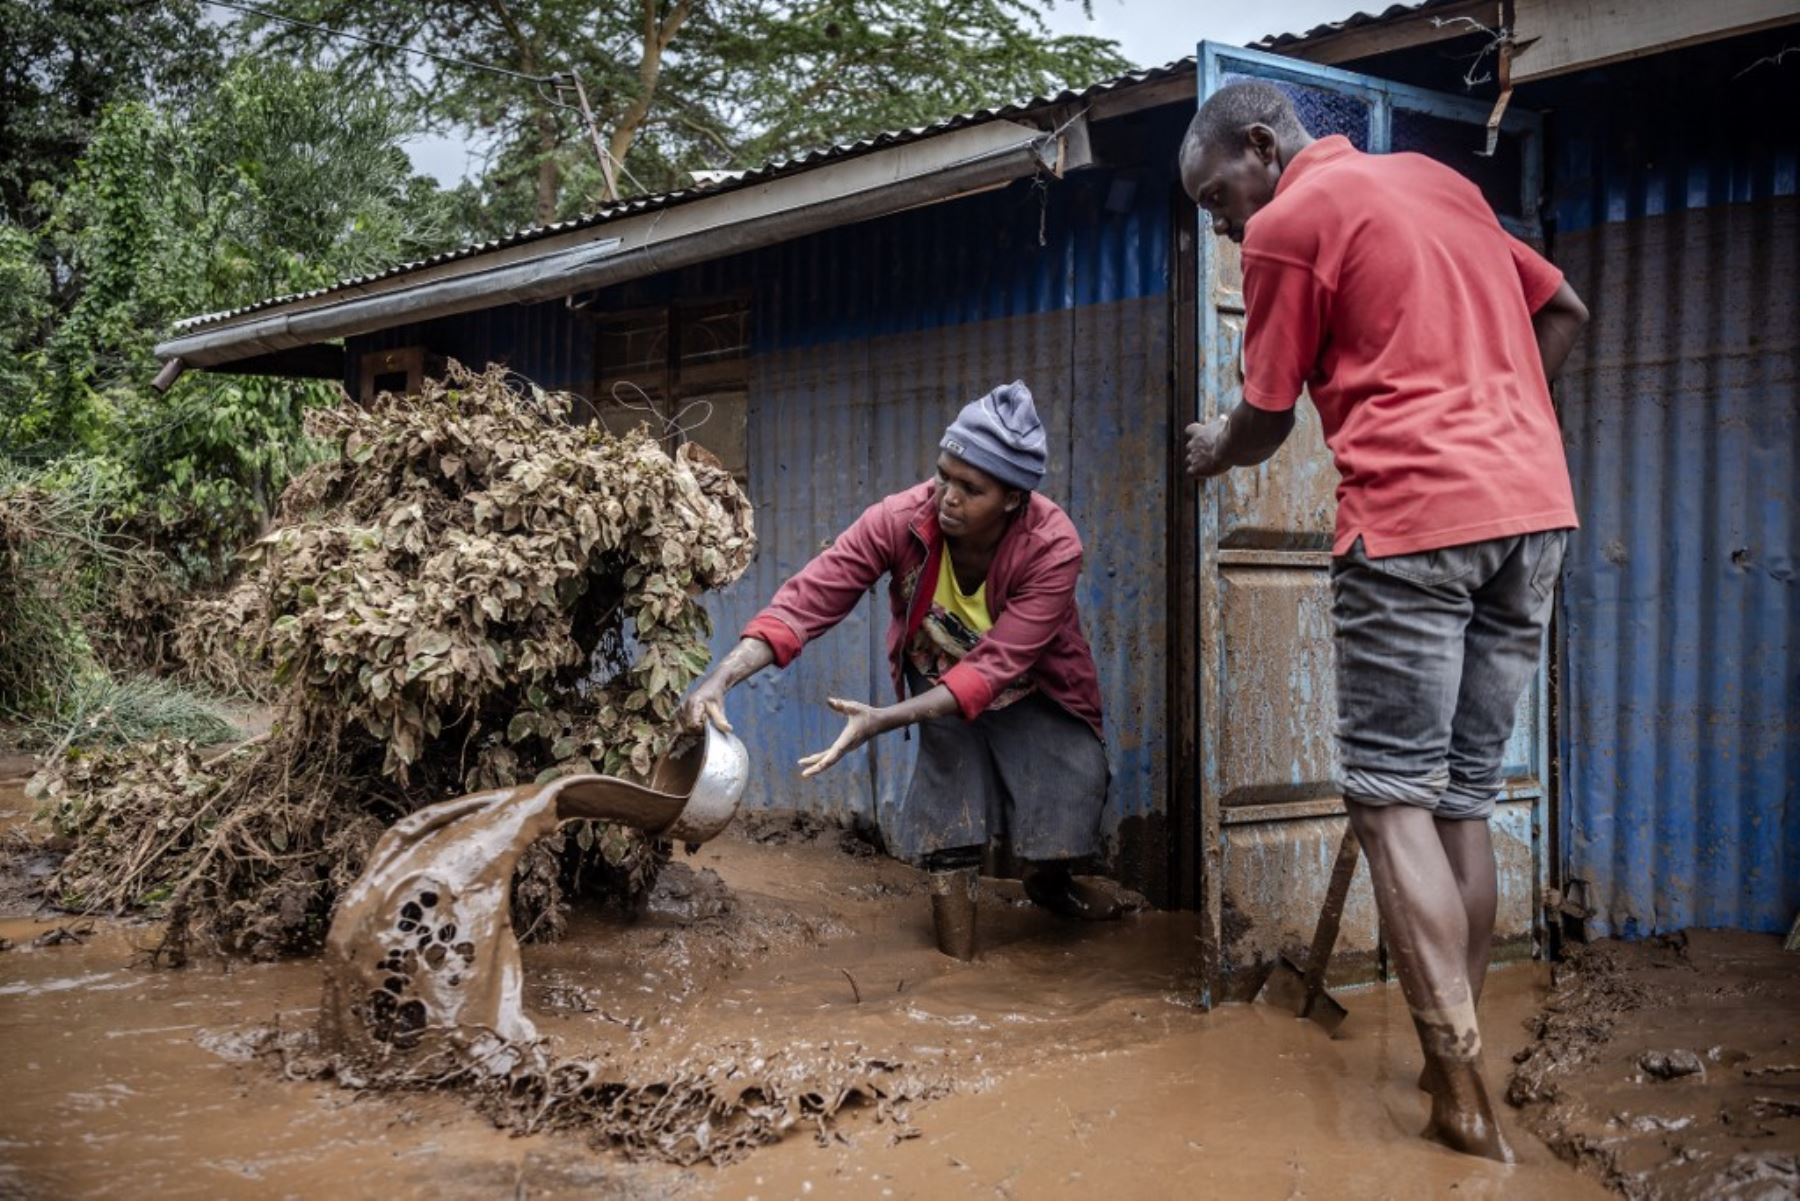 Sin contar este incidente, 76 personas han perdido la vida en Kenia desde marzo debido a las lluvias más intensas de lo habitual que azotan esta región, agravadas por el fenómeno climático de El Niño. Foto: AFP